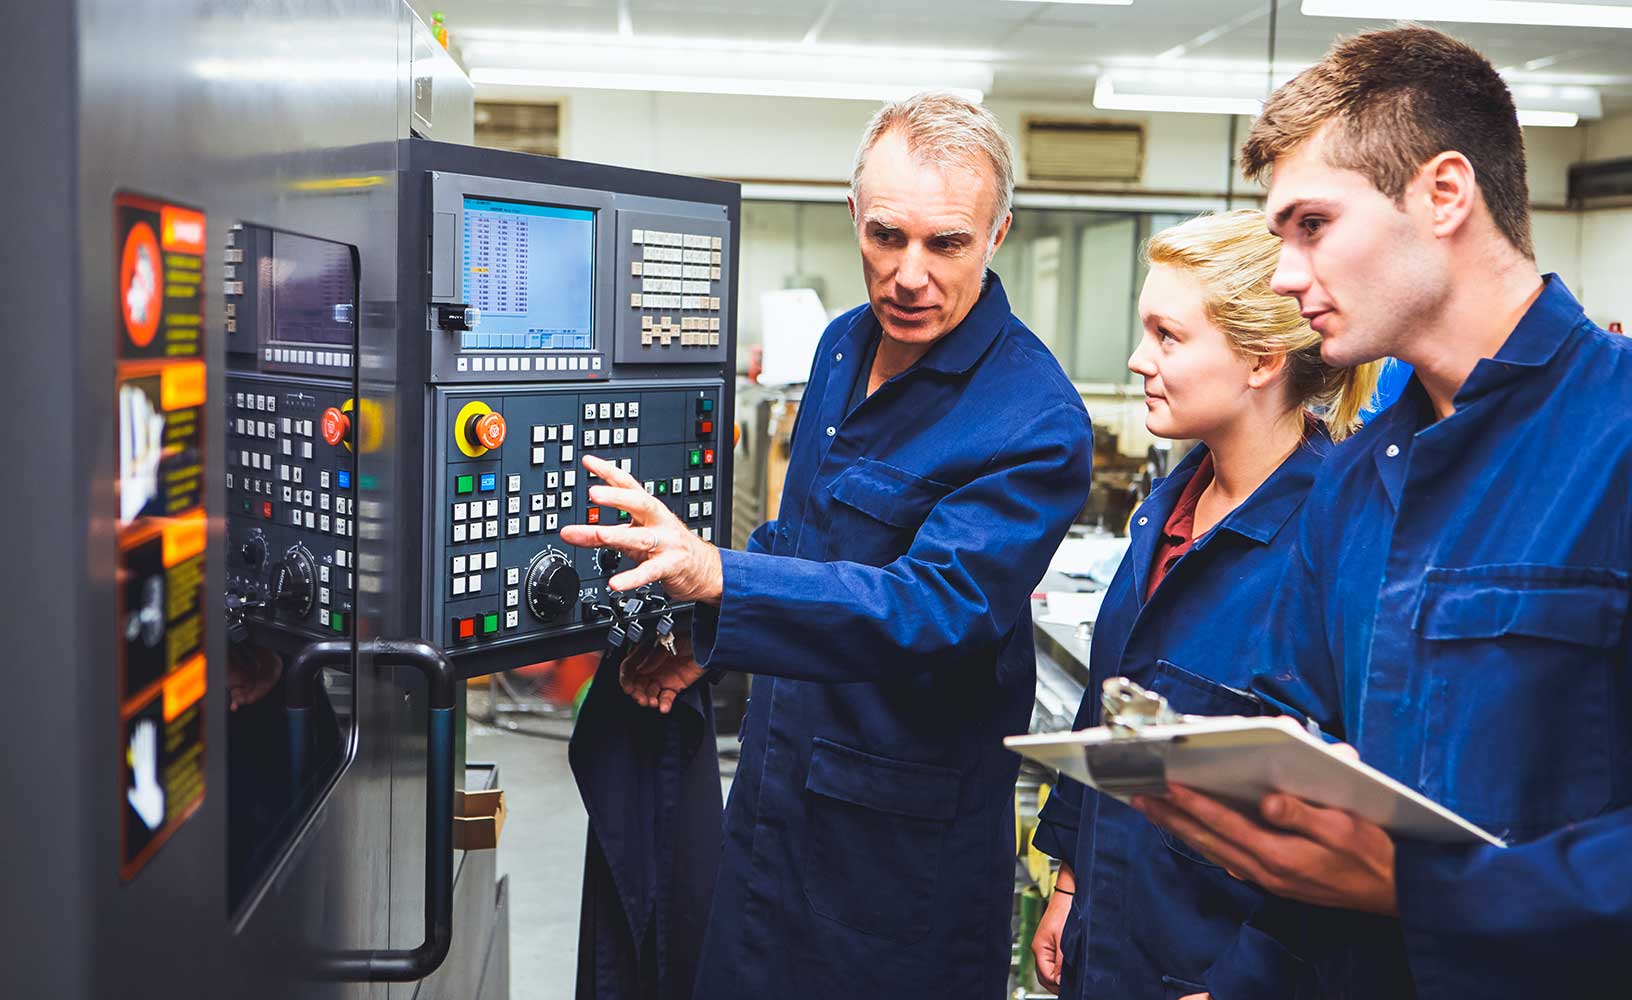 Un equipo de tres trabajadores de fabricación revisa los datos y la funcionalidad de una máquina para comprobar la efectividad general del los equipos.